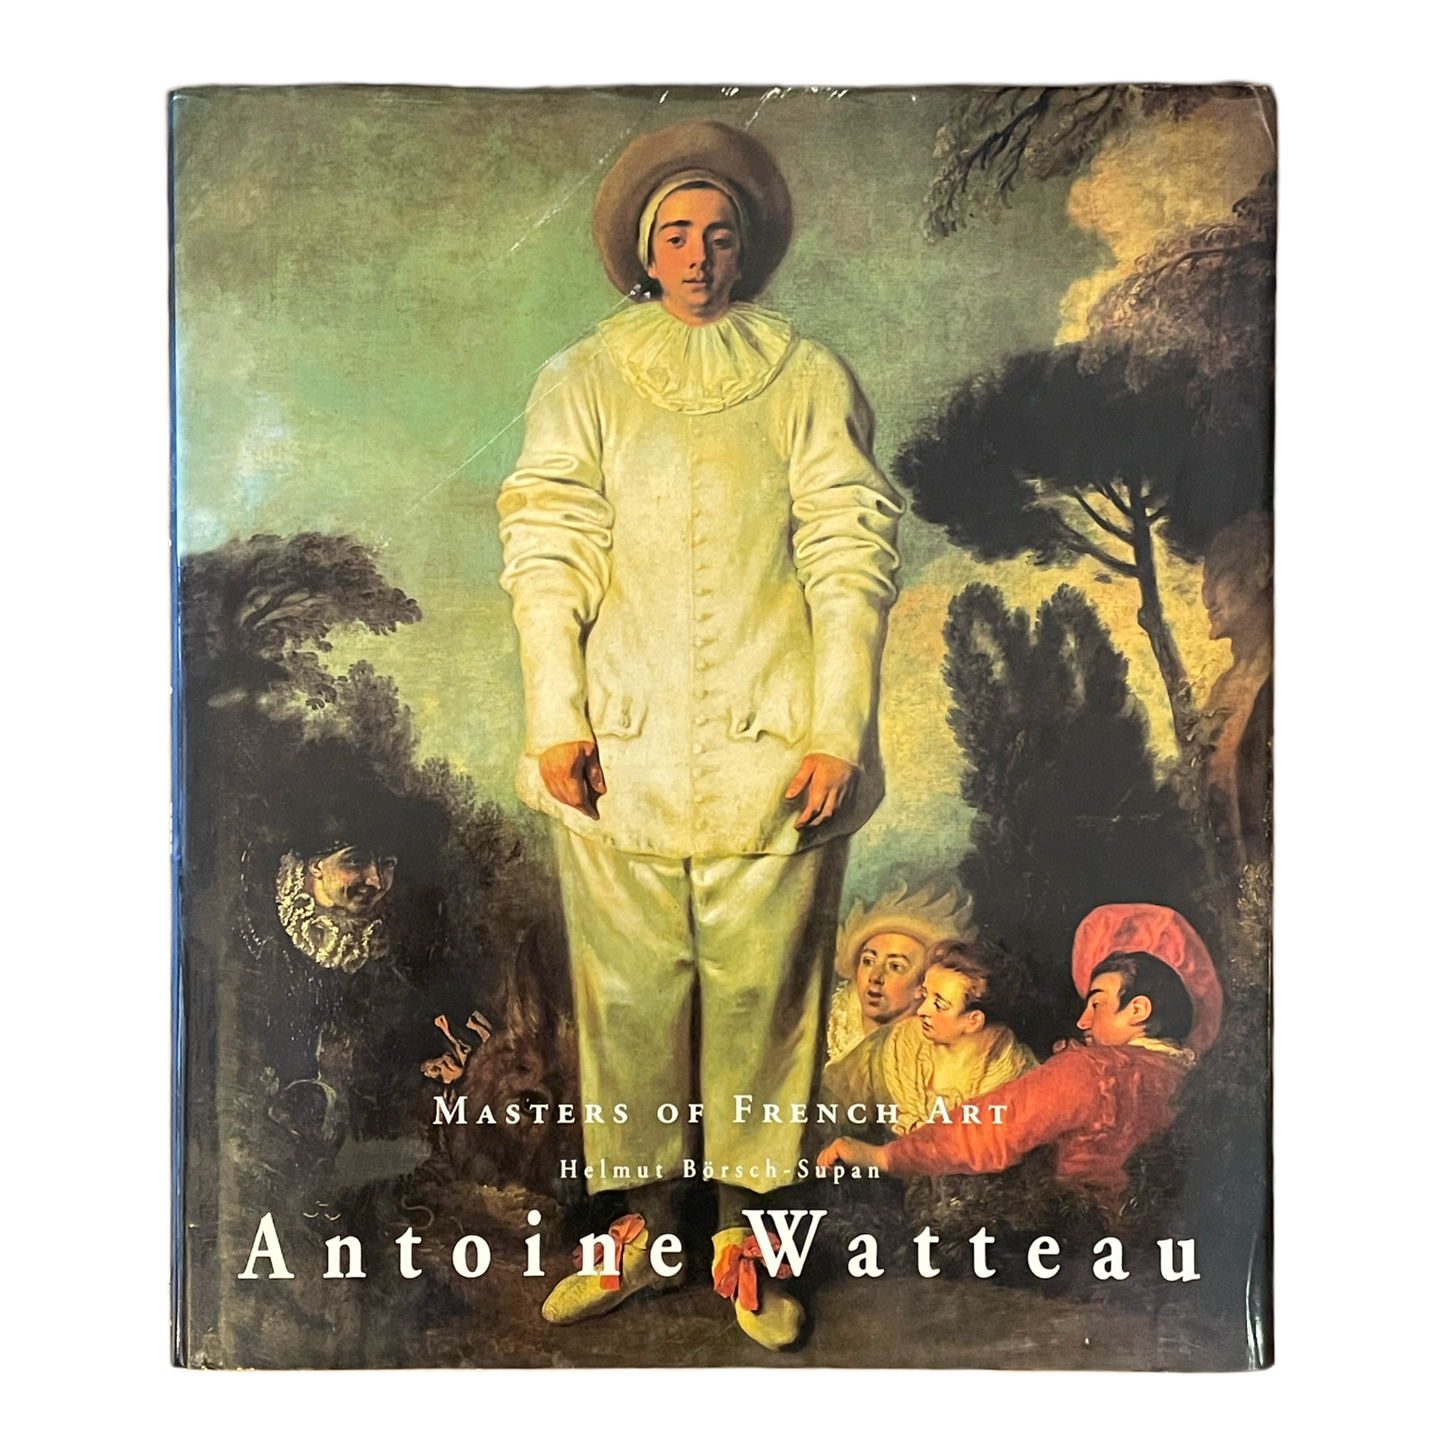 Masters of French Art: Antoine Watteau by Helmut Börsch-Supan